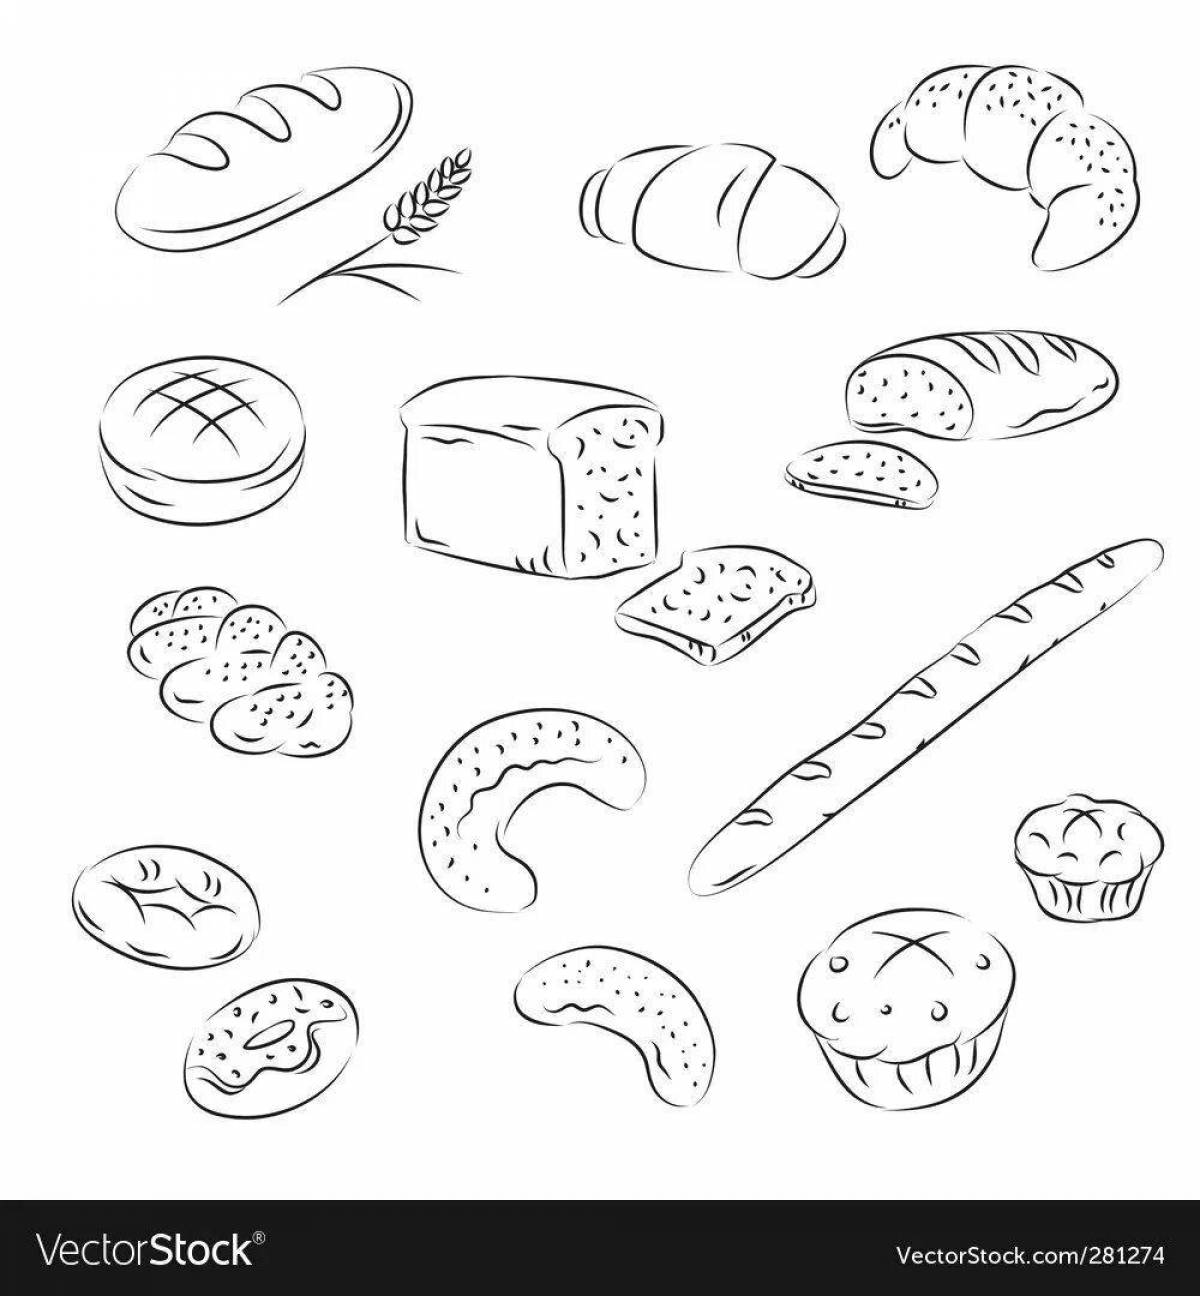 Интересная страница раскраски хлебобулочных изделий для дошкольников